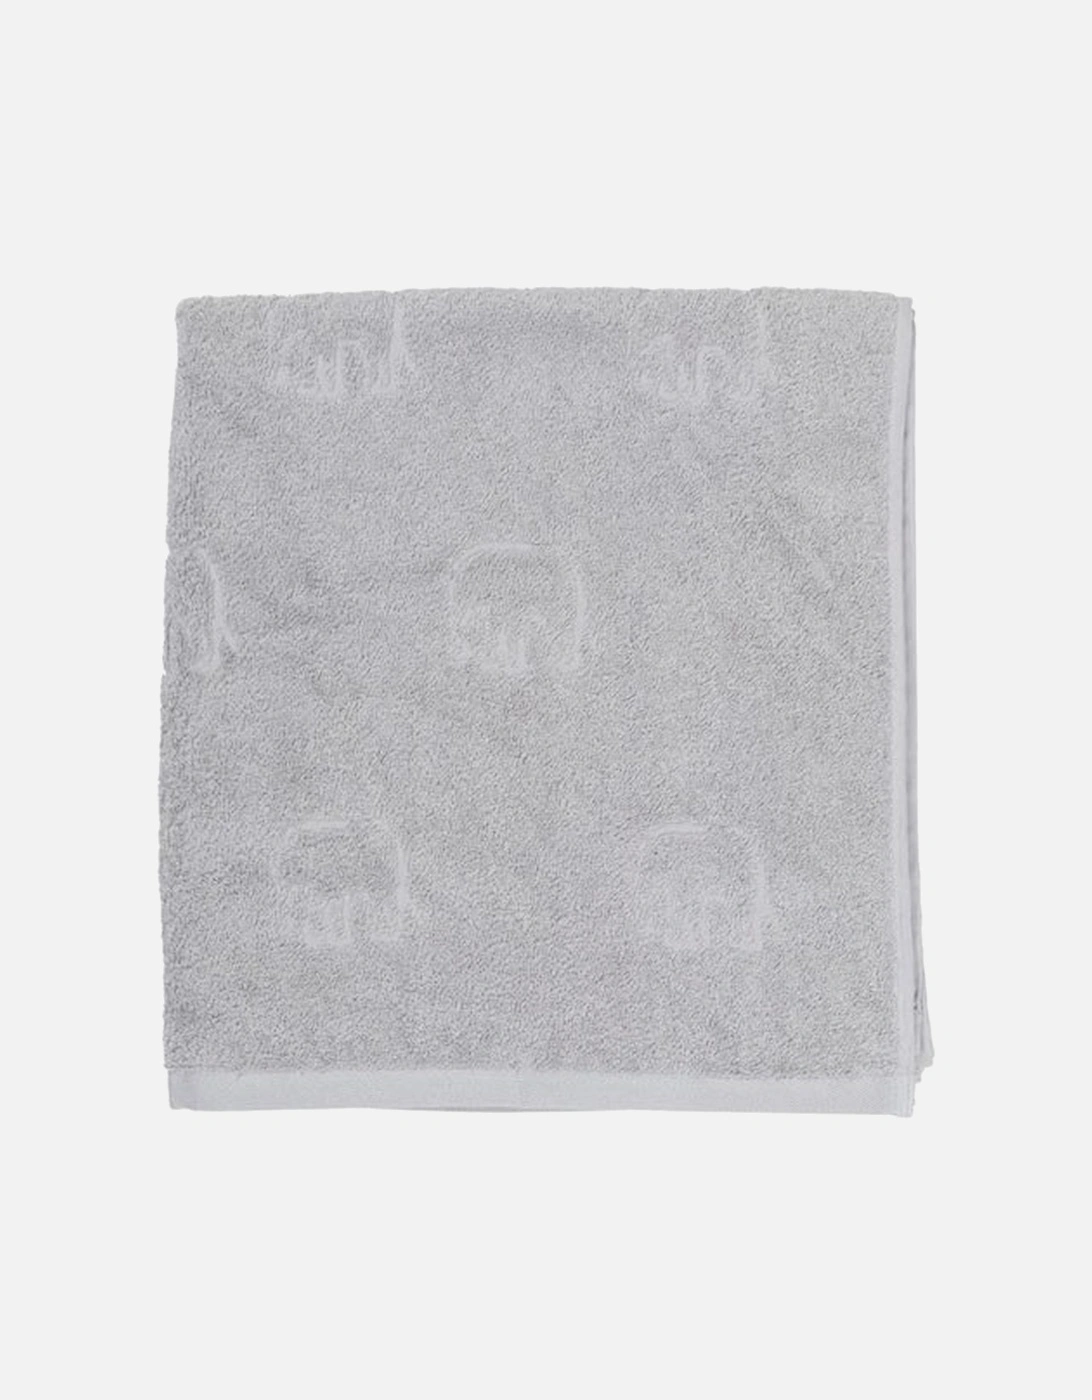 Elephant Bath Towel, 3 of 2